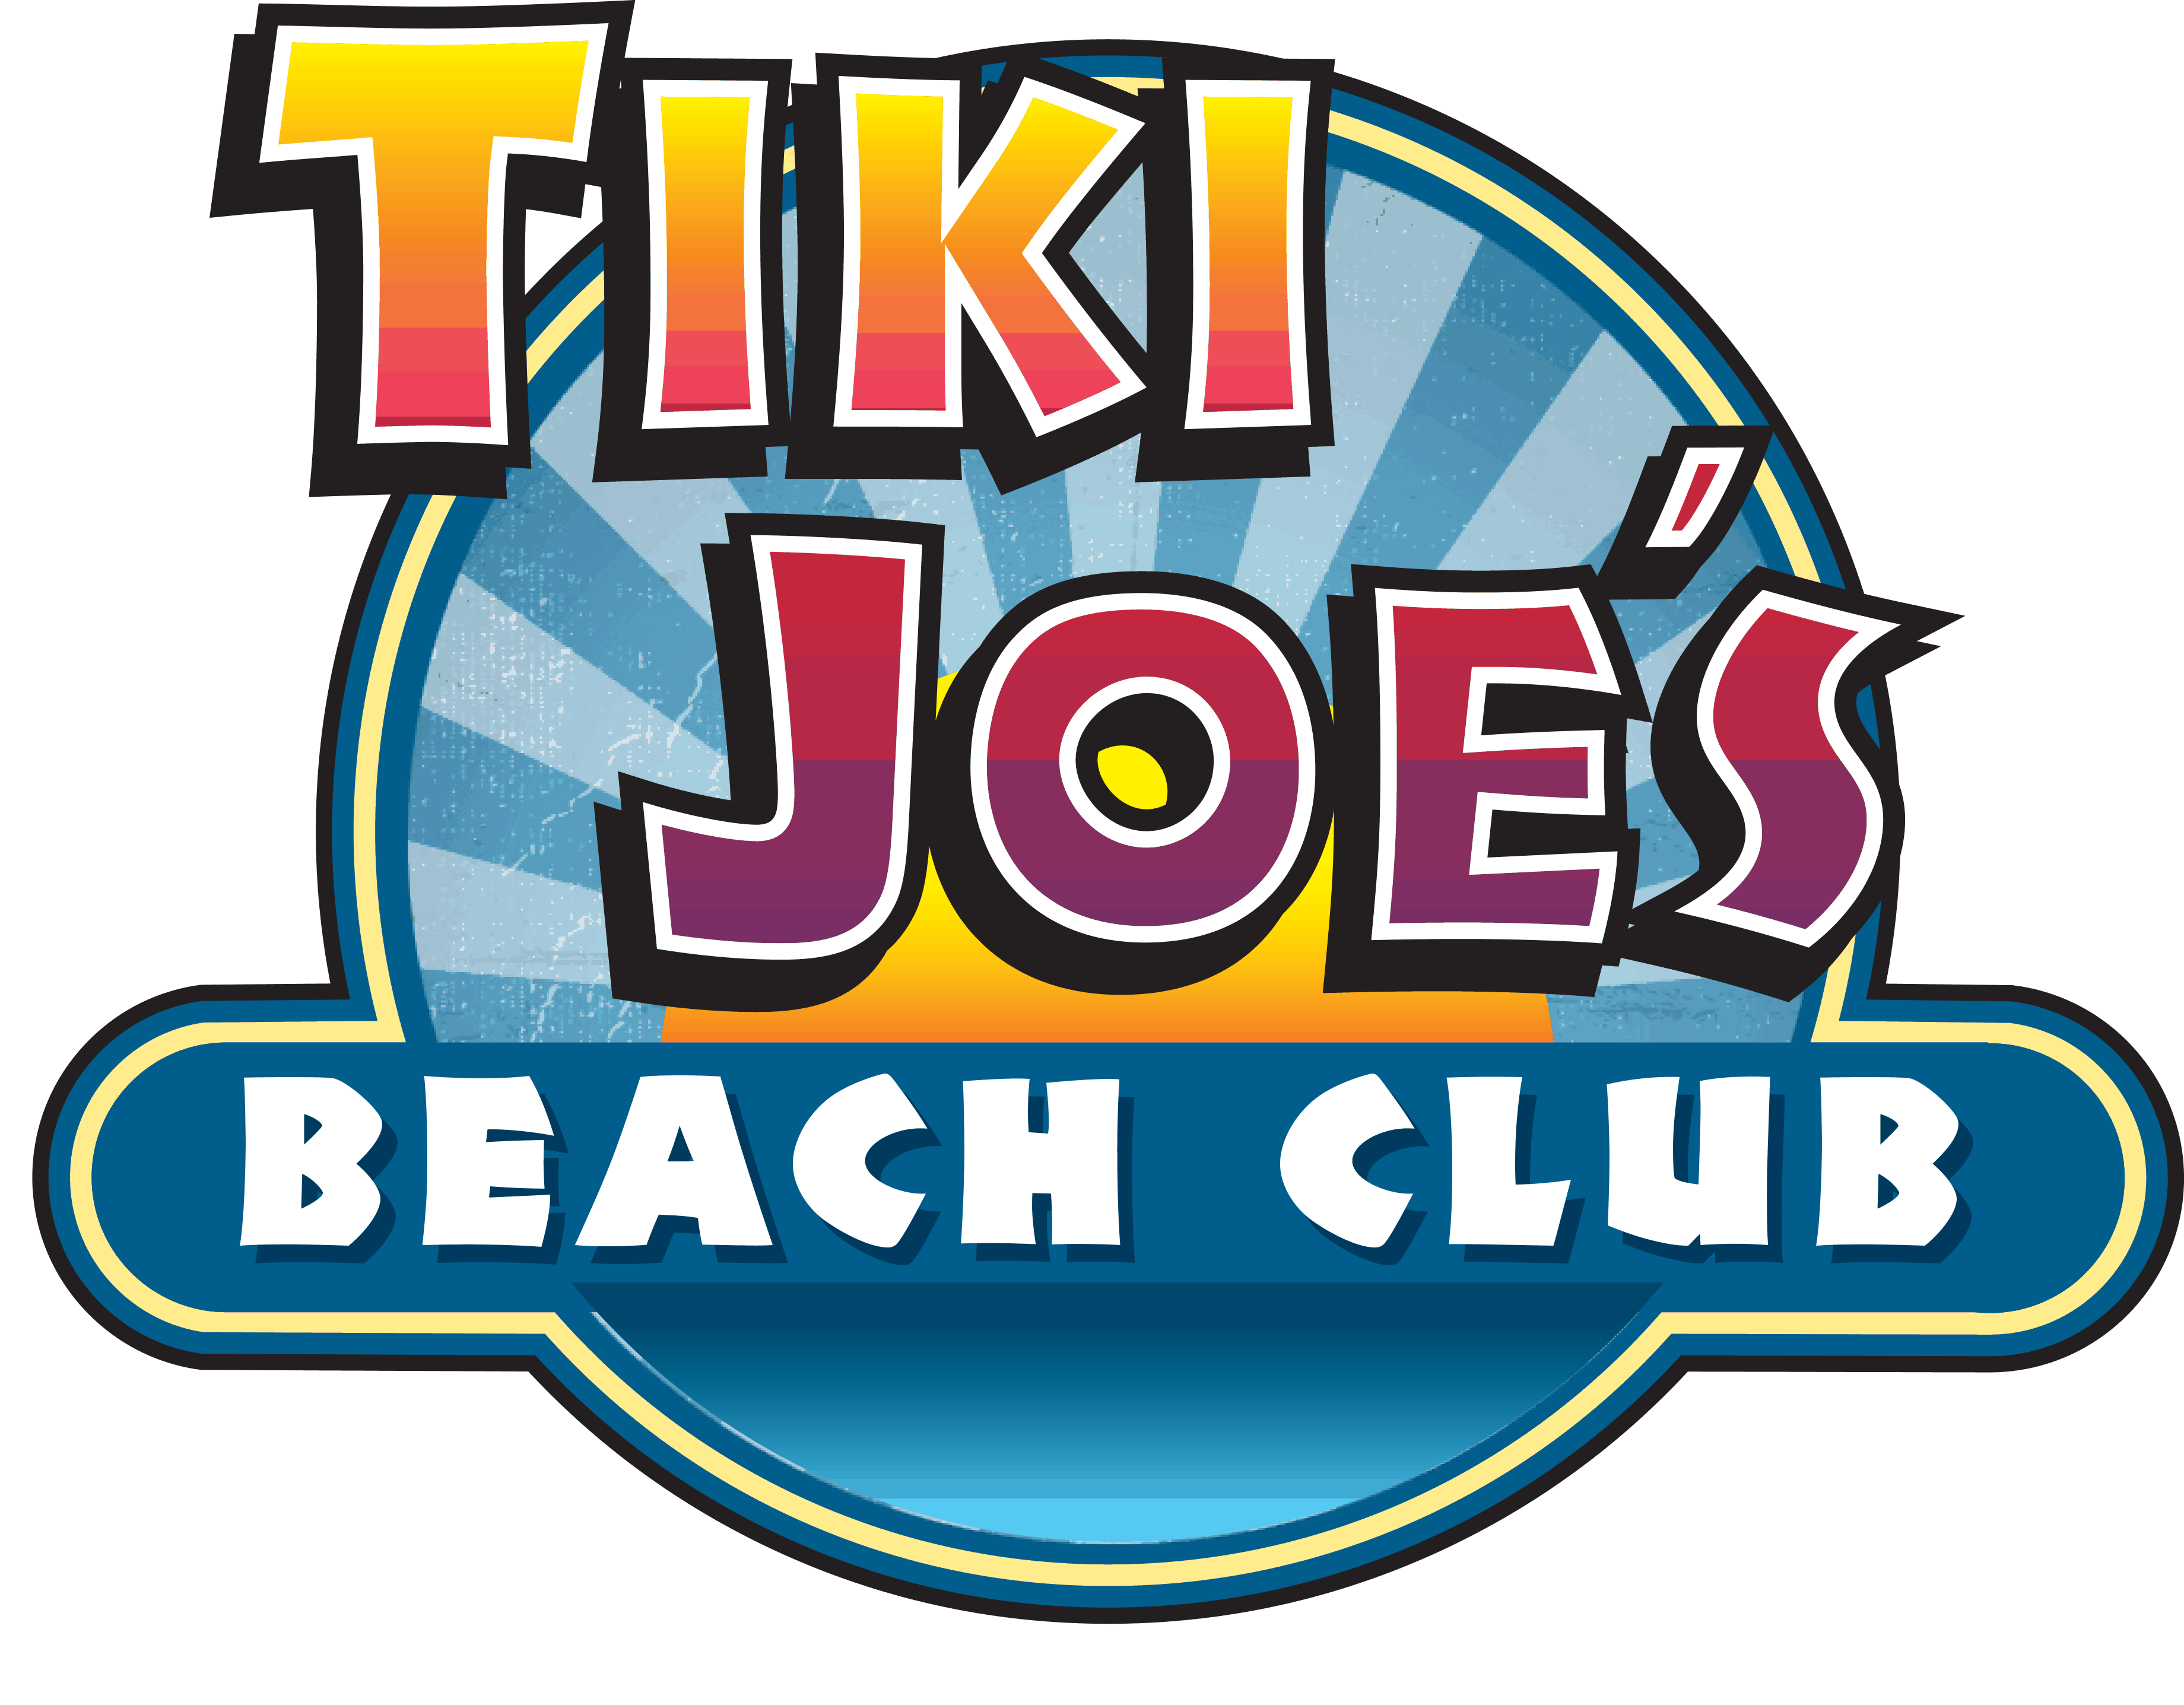 Tiki Joe's Smith Point Tiki Joe's Beach Club